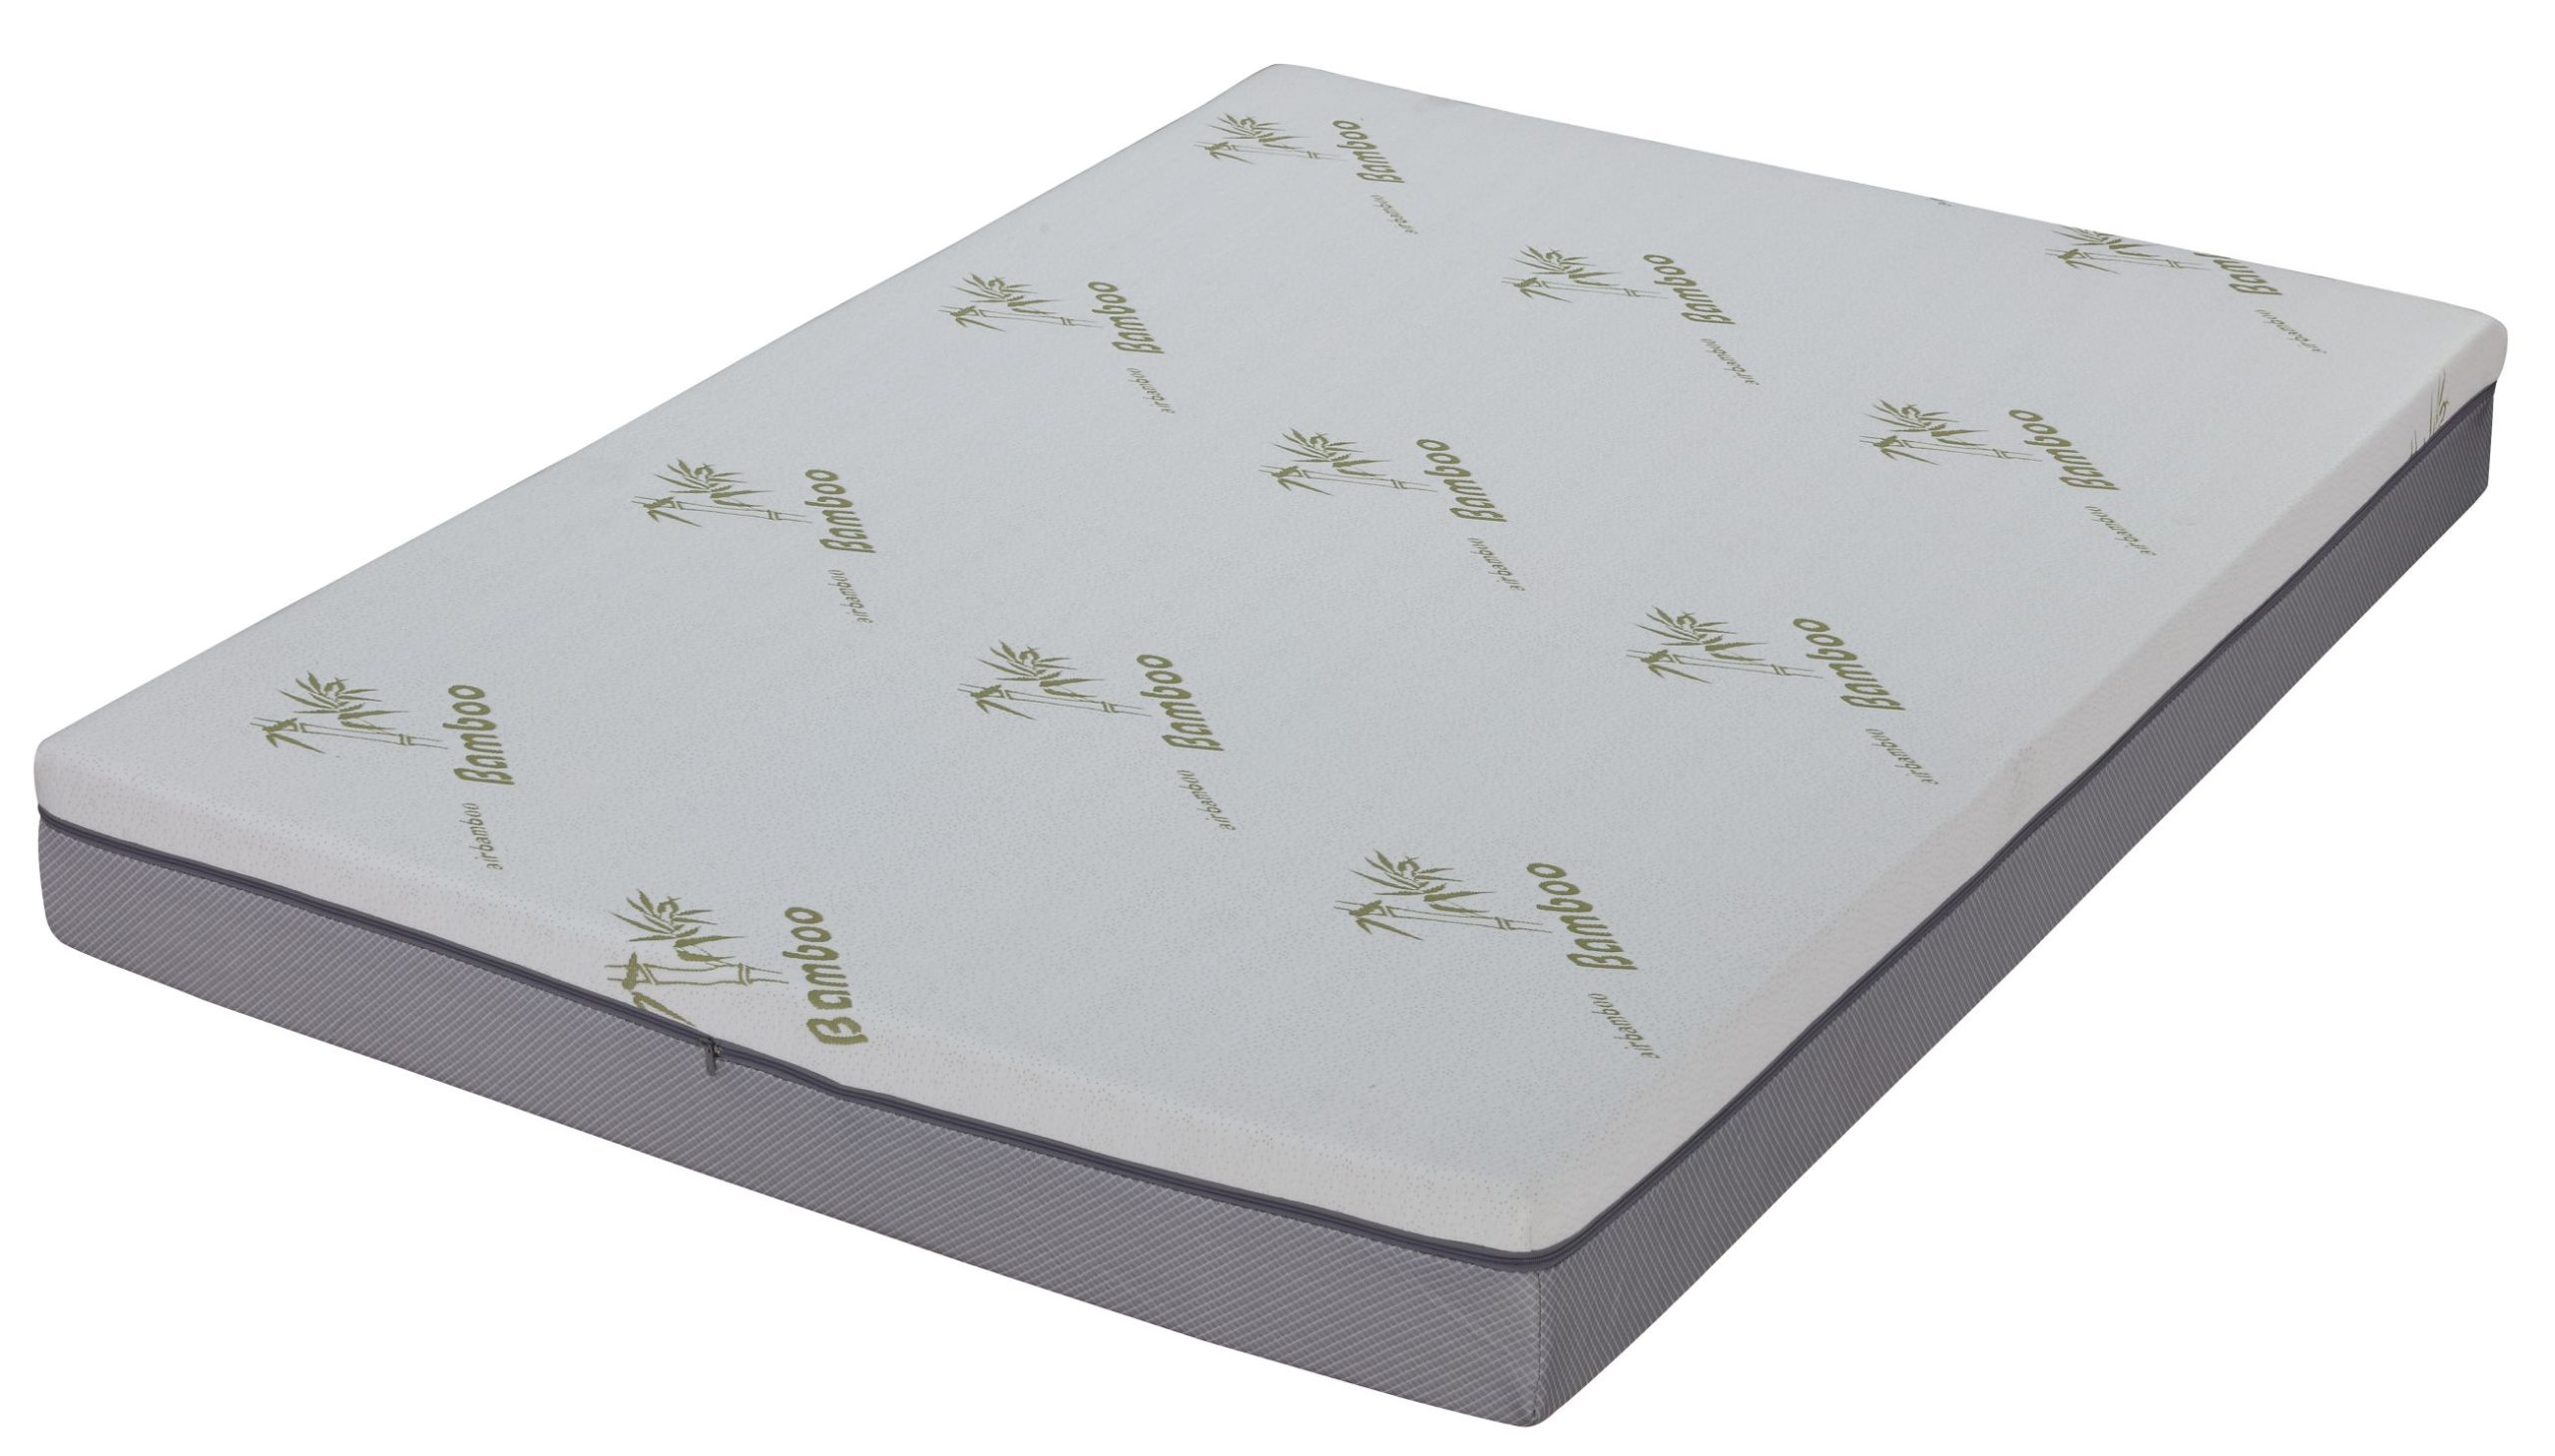 cradlesoft full size 8 gel memory foam mattress